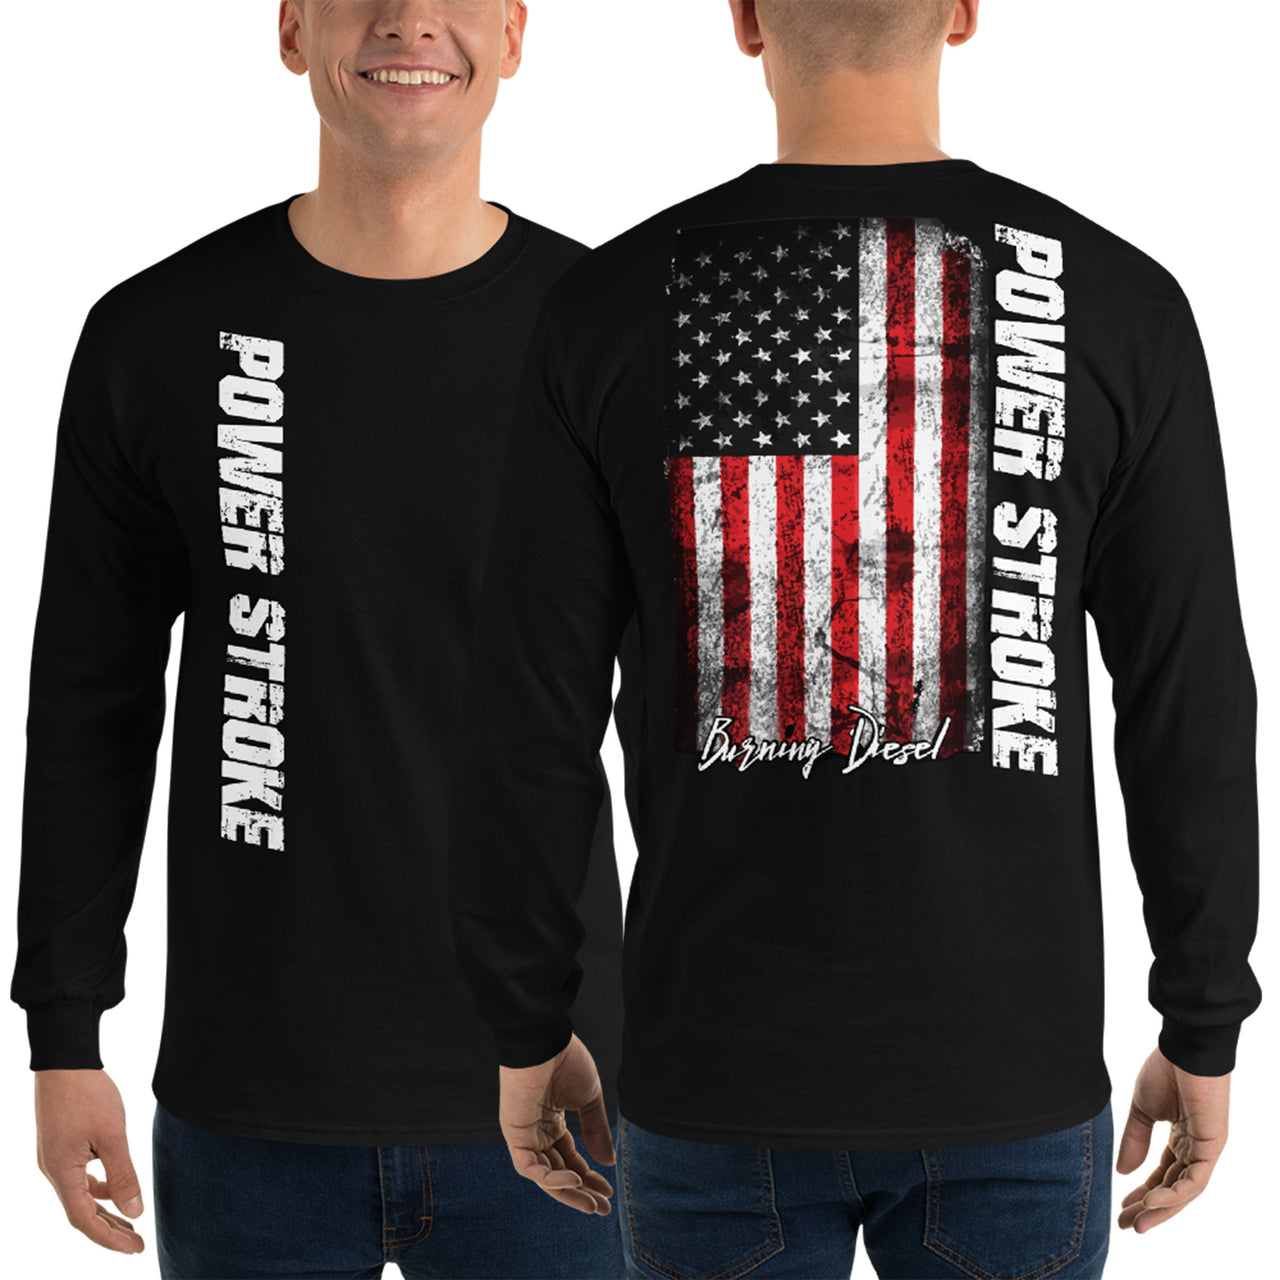 Power Stroke American Flag Long Sleeve T-Shirt black modeled